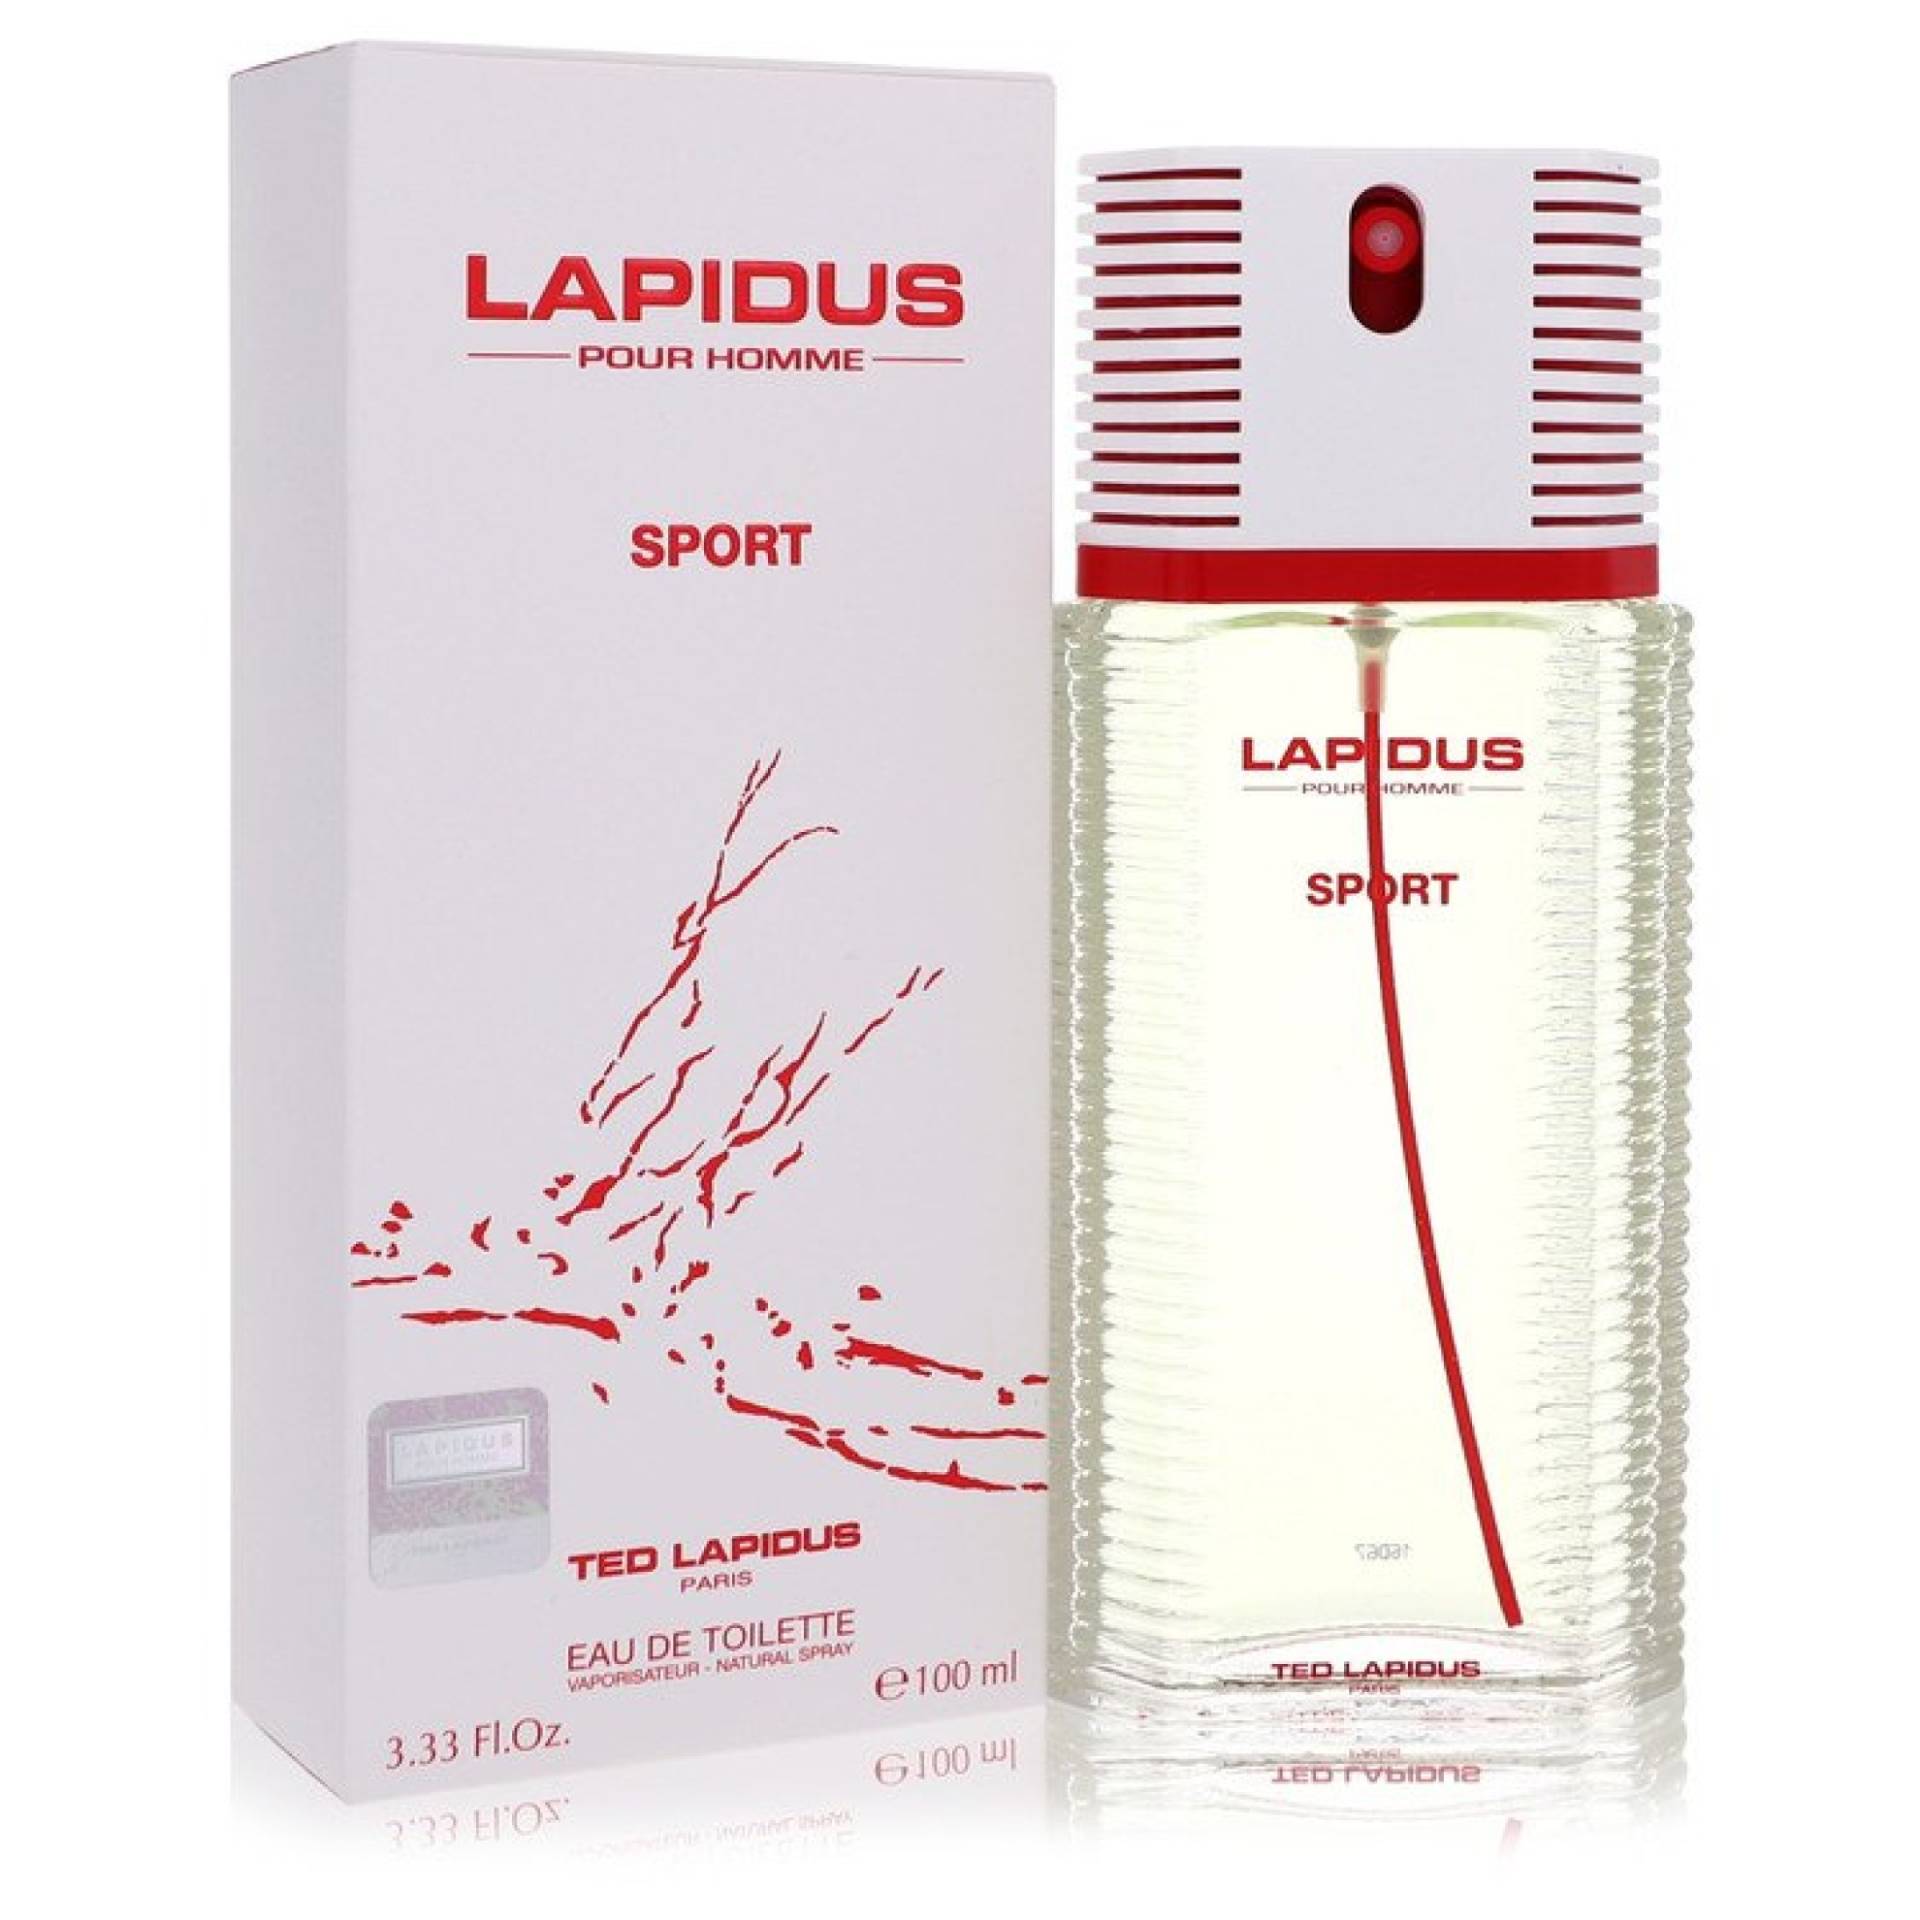 Lapidus Pour Homme Sport Eau De Toilette Spray 98 ml von Ted Lapidus